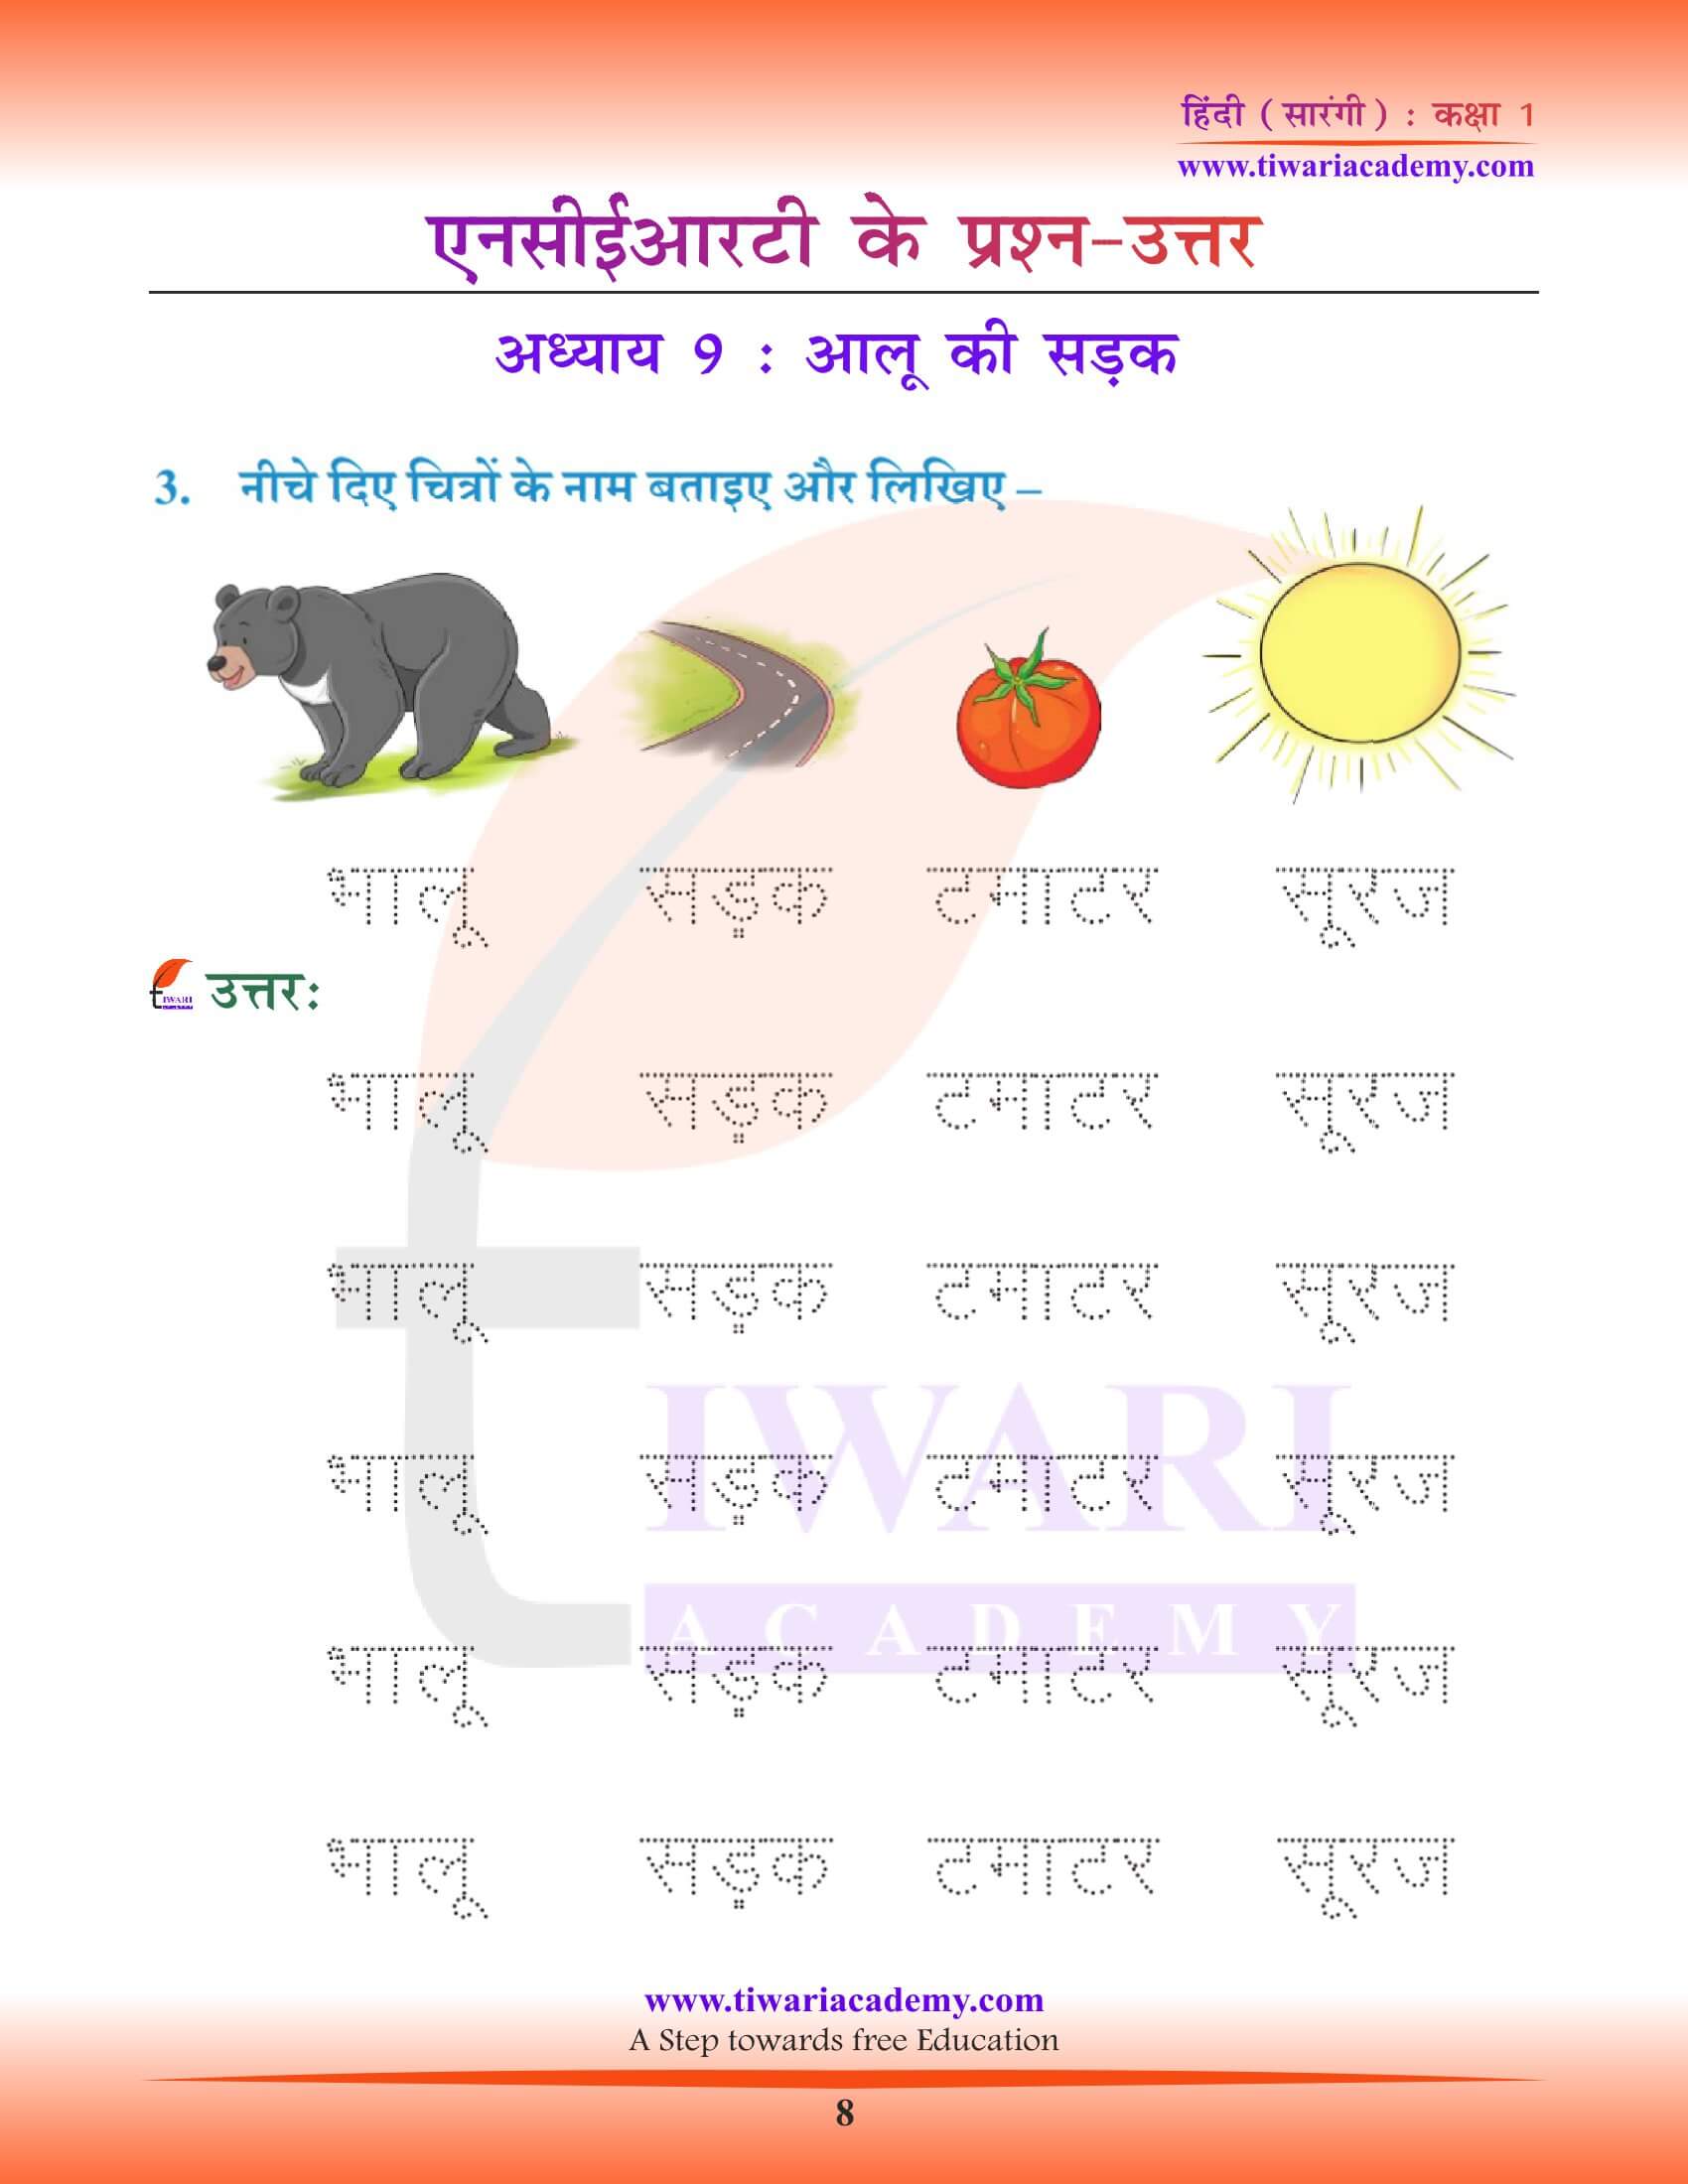 कक्षा 1 हिंदी सारंगी पाठ 9 के लिए लेखन सामग्री